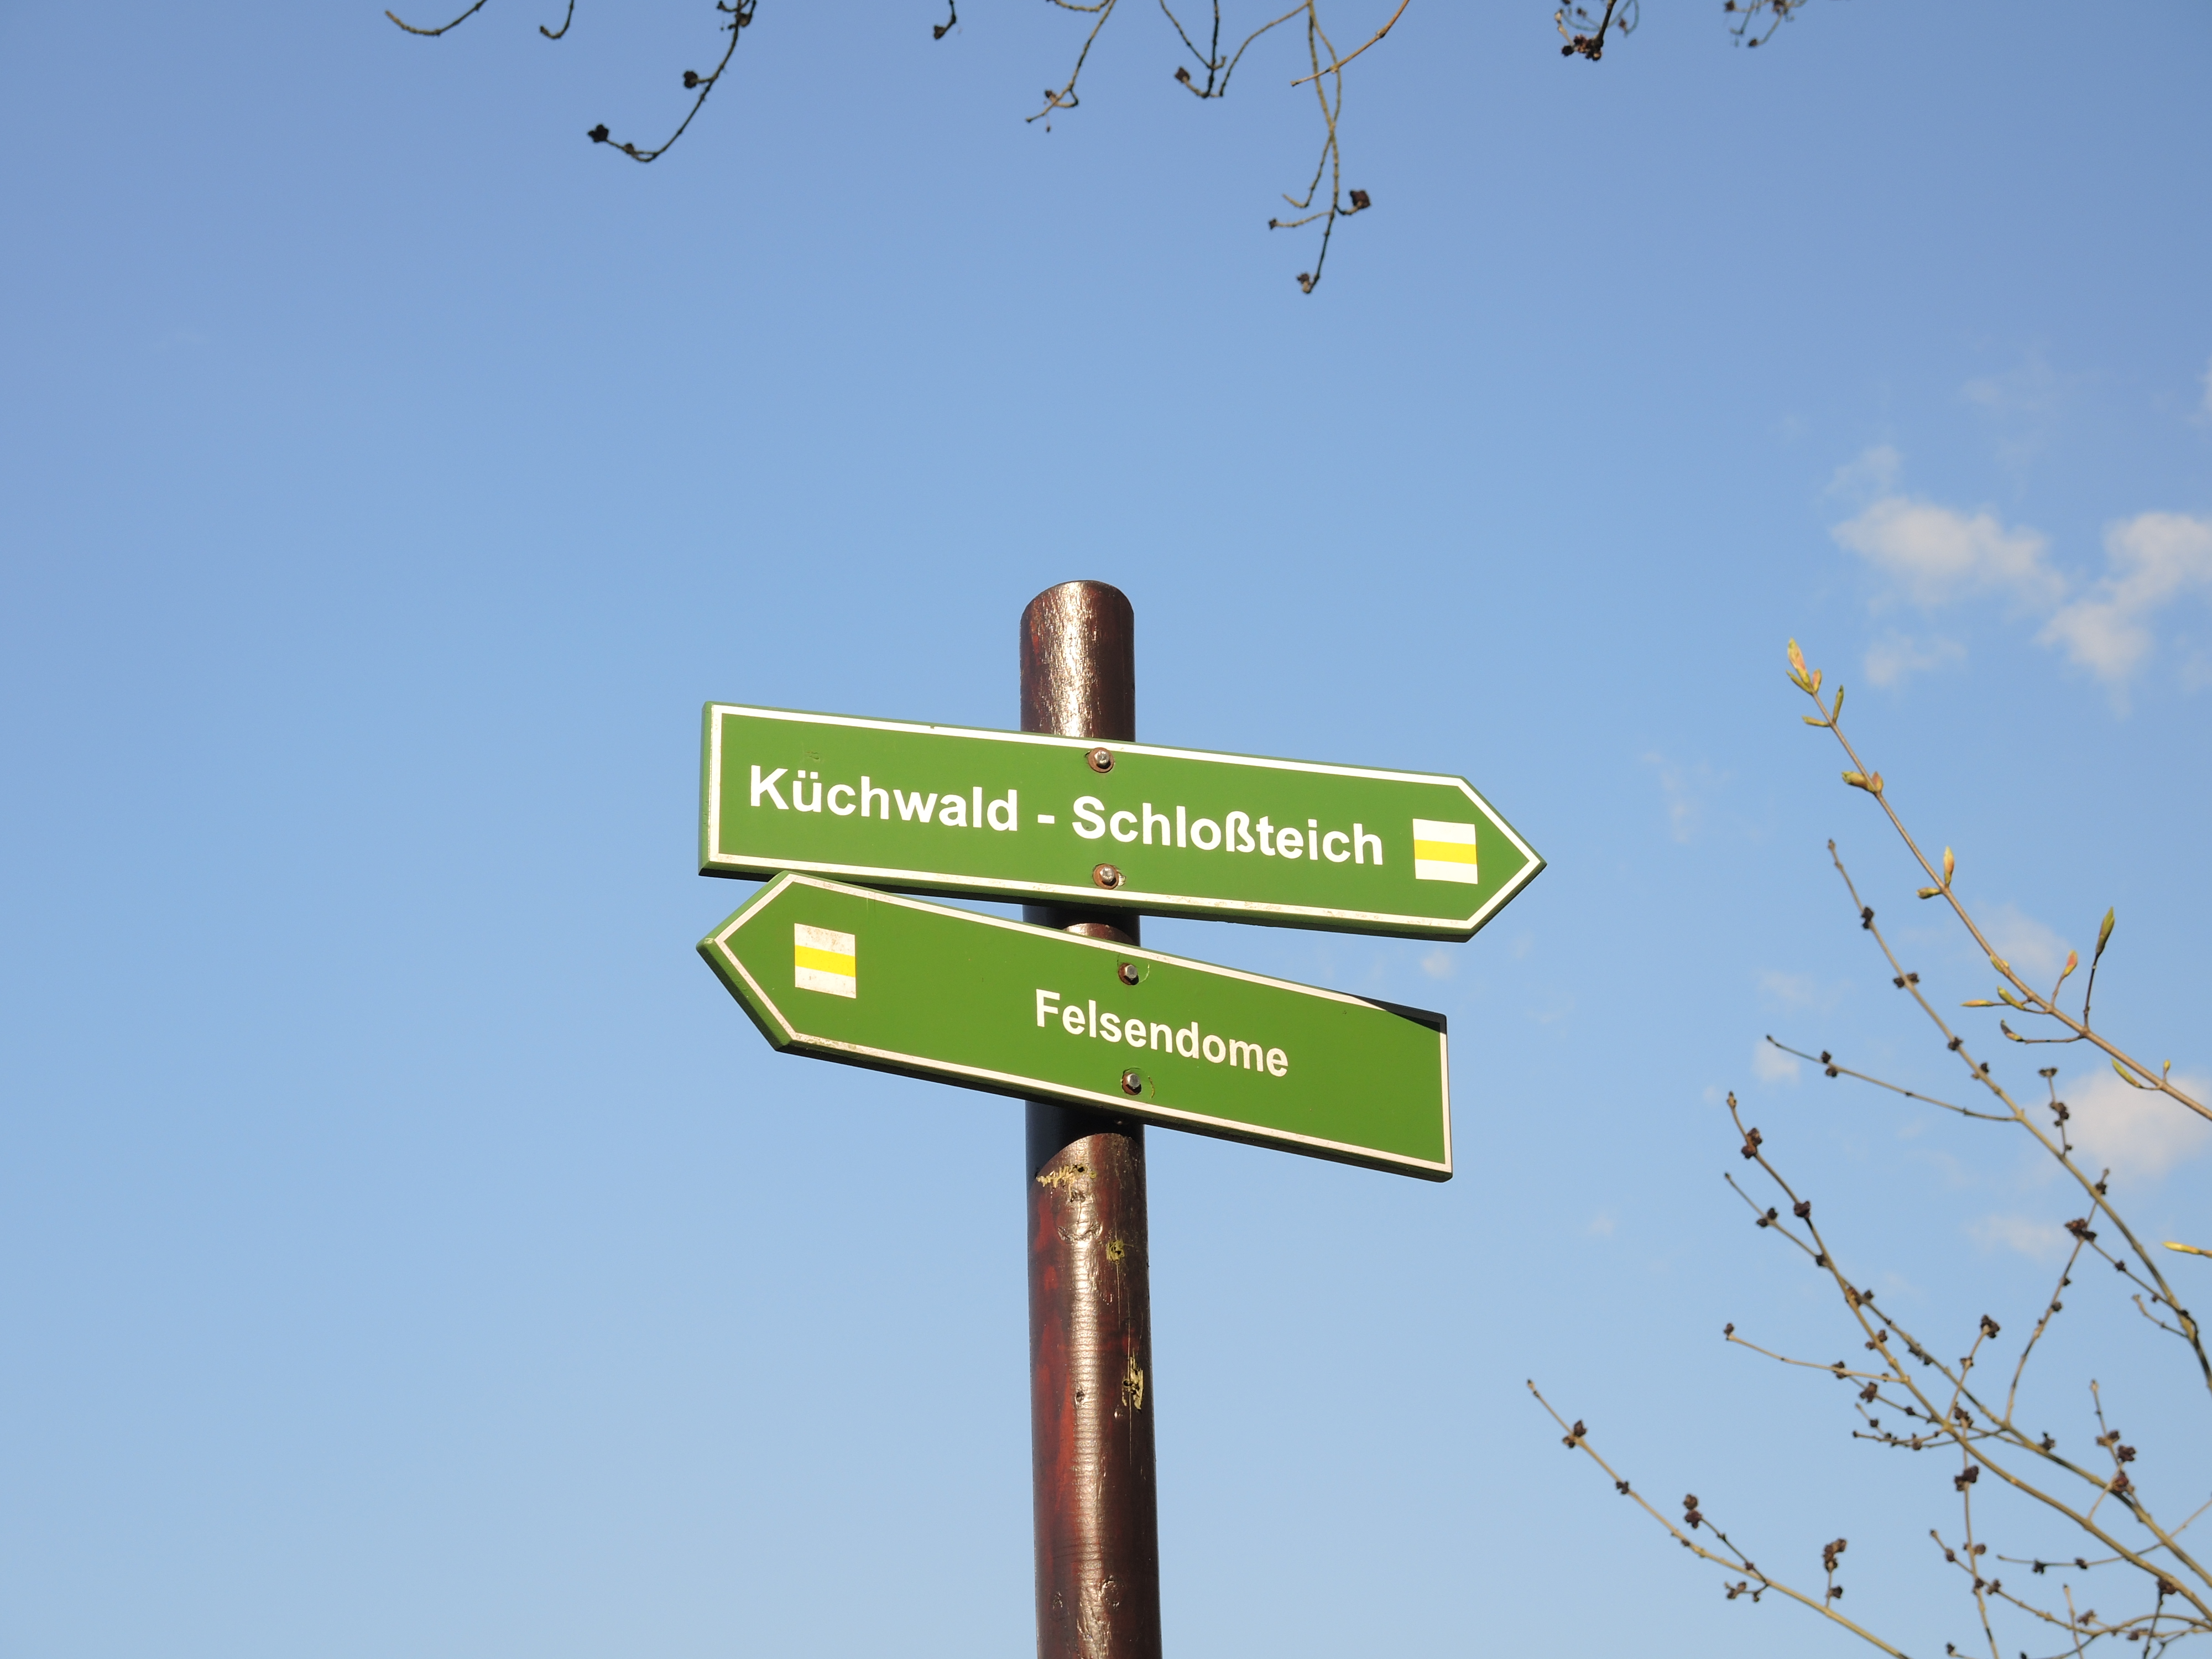 In Chemnitz und Umgebung 322 Kilometer markierte Wanderwege. Hier zu sehen: Wegweiser am Wanderweg West-Ost im Crimmitschauer Wald.